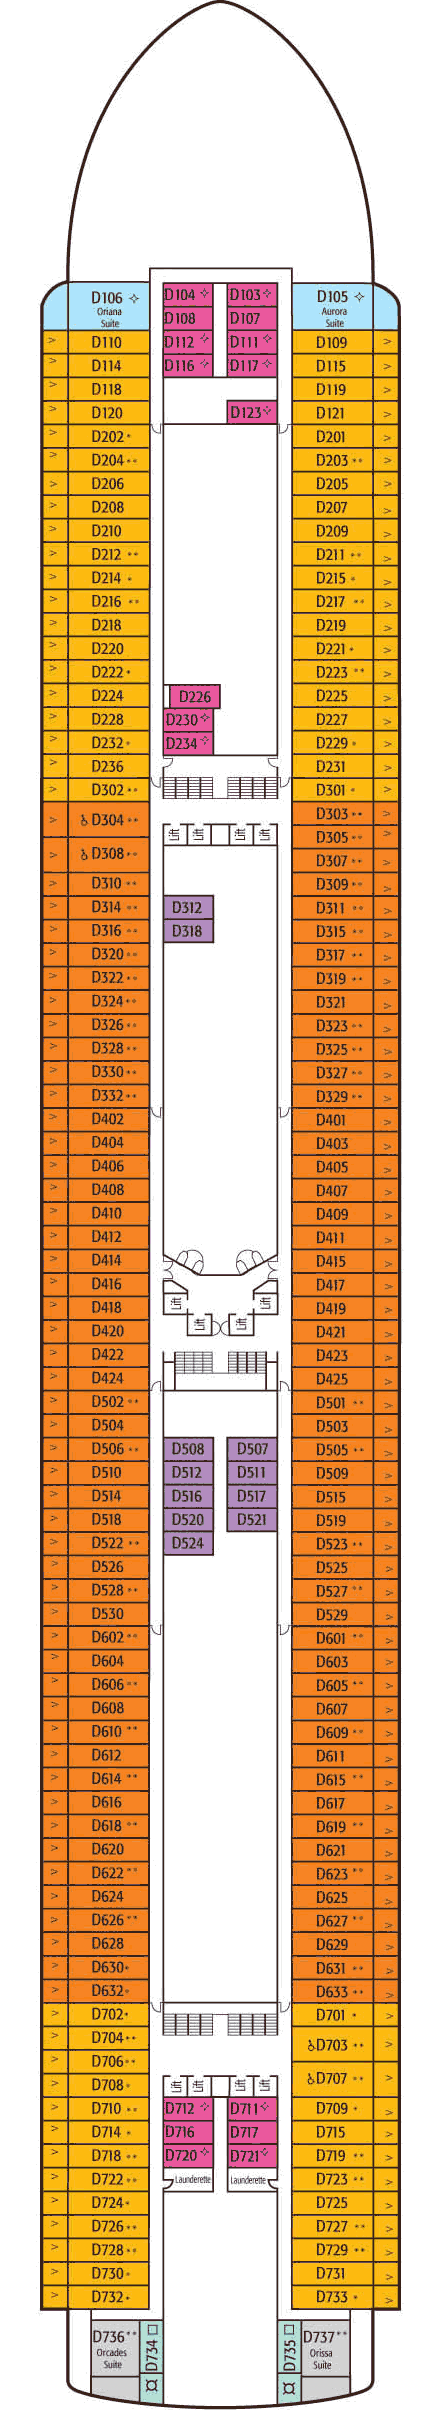 D Deck Deck Plan